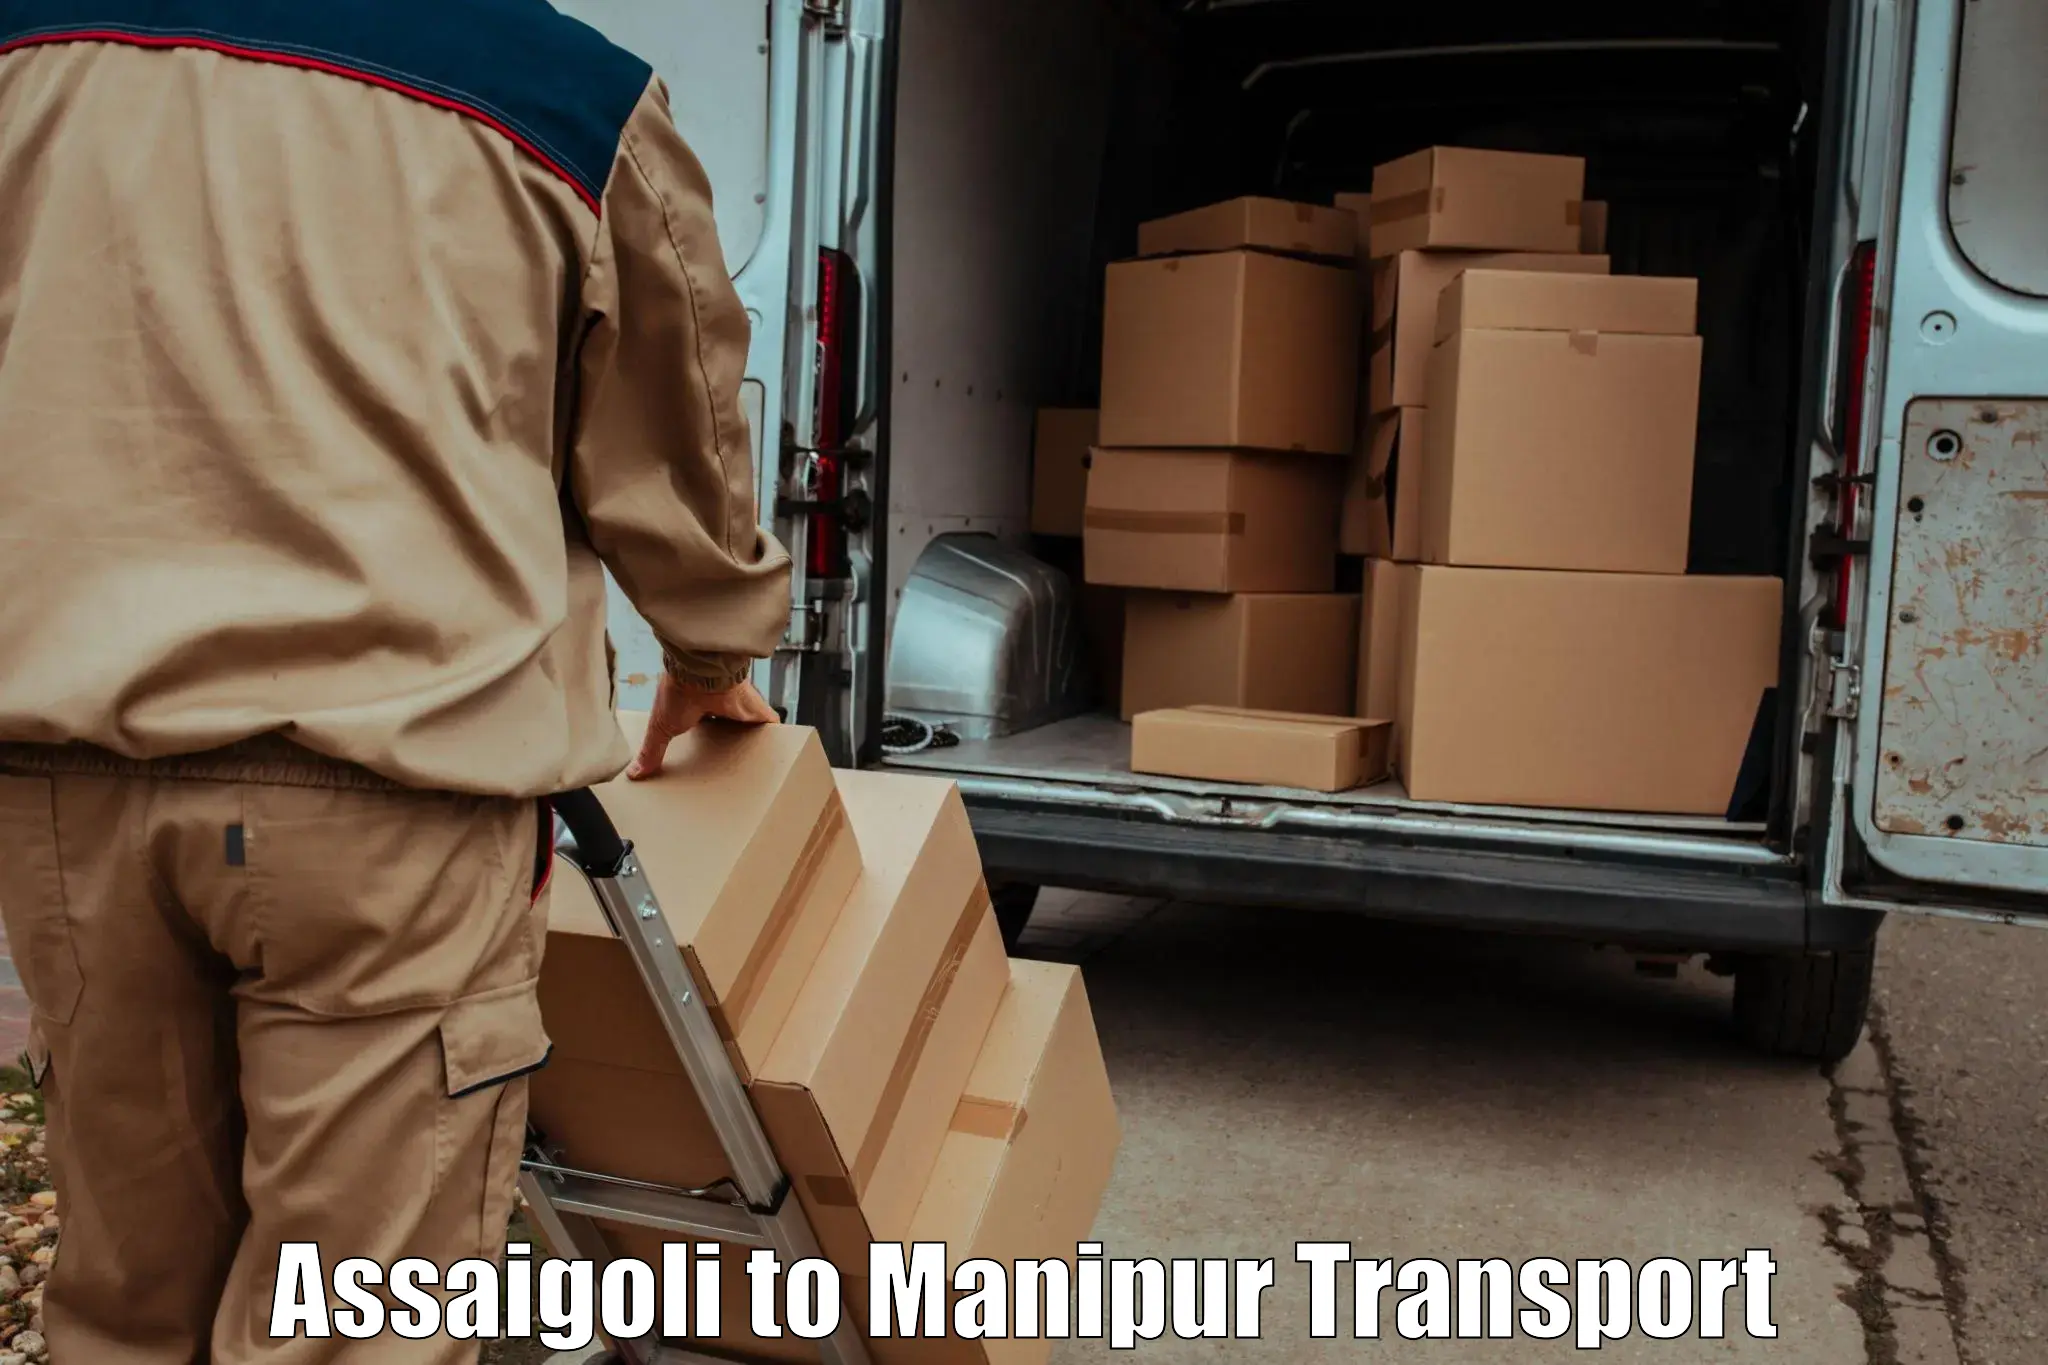 Vehicle courier services Assaigoli to Moirang